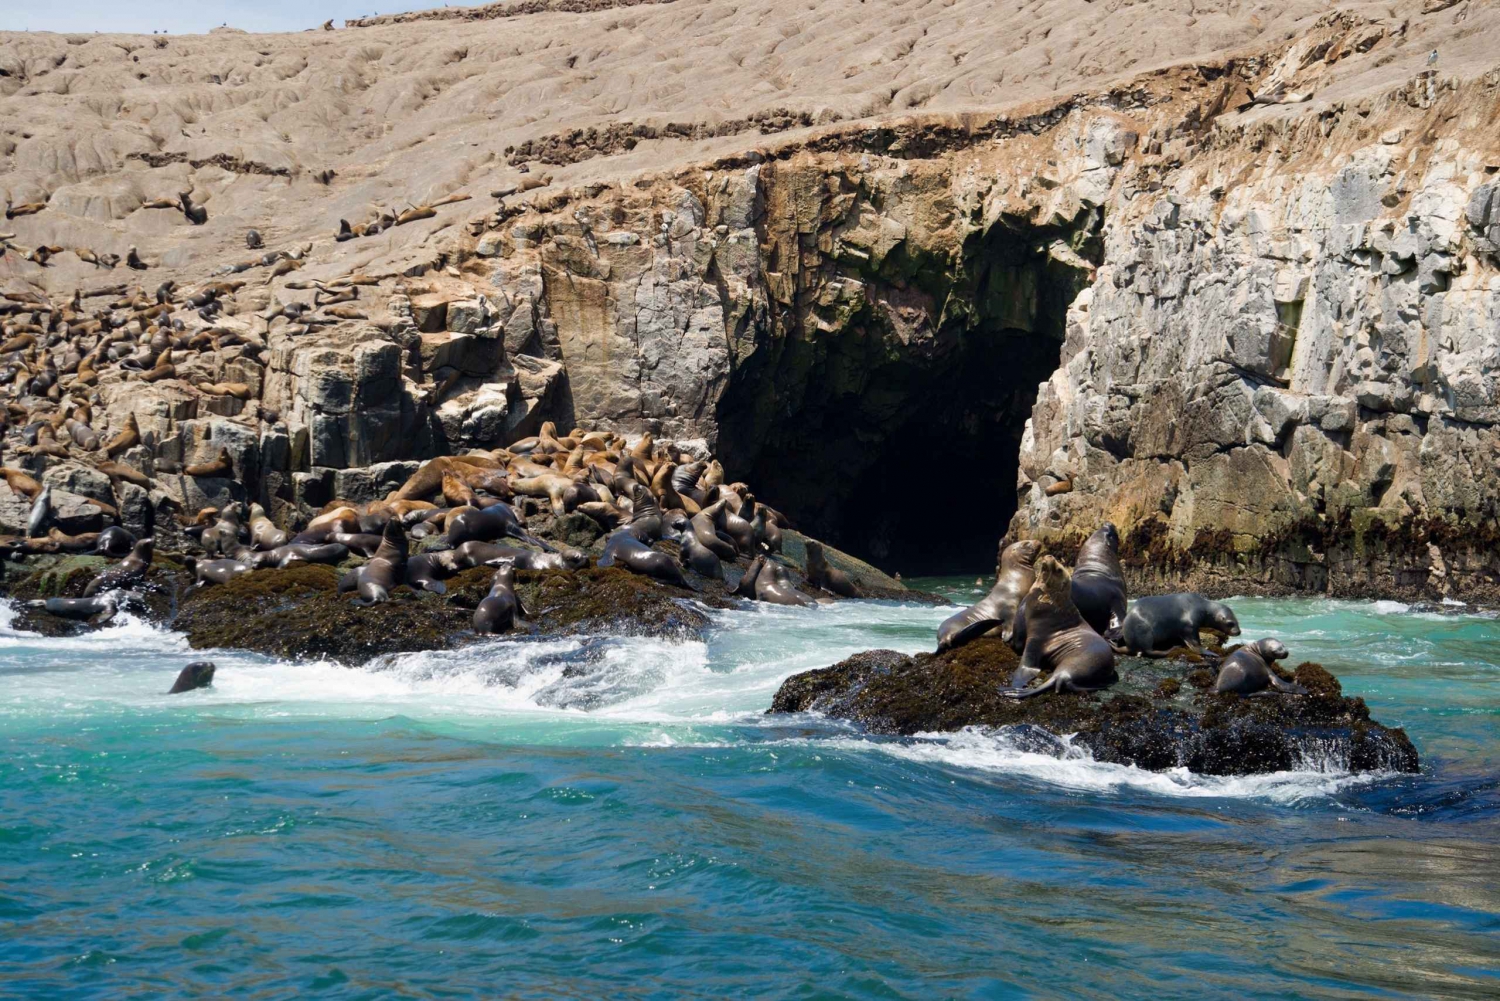 Lima: Søløvesvømning og krydstogt til Palomino-øerne med dyreliv